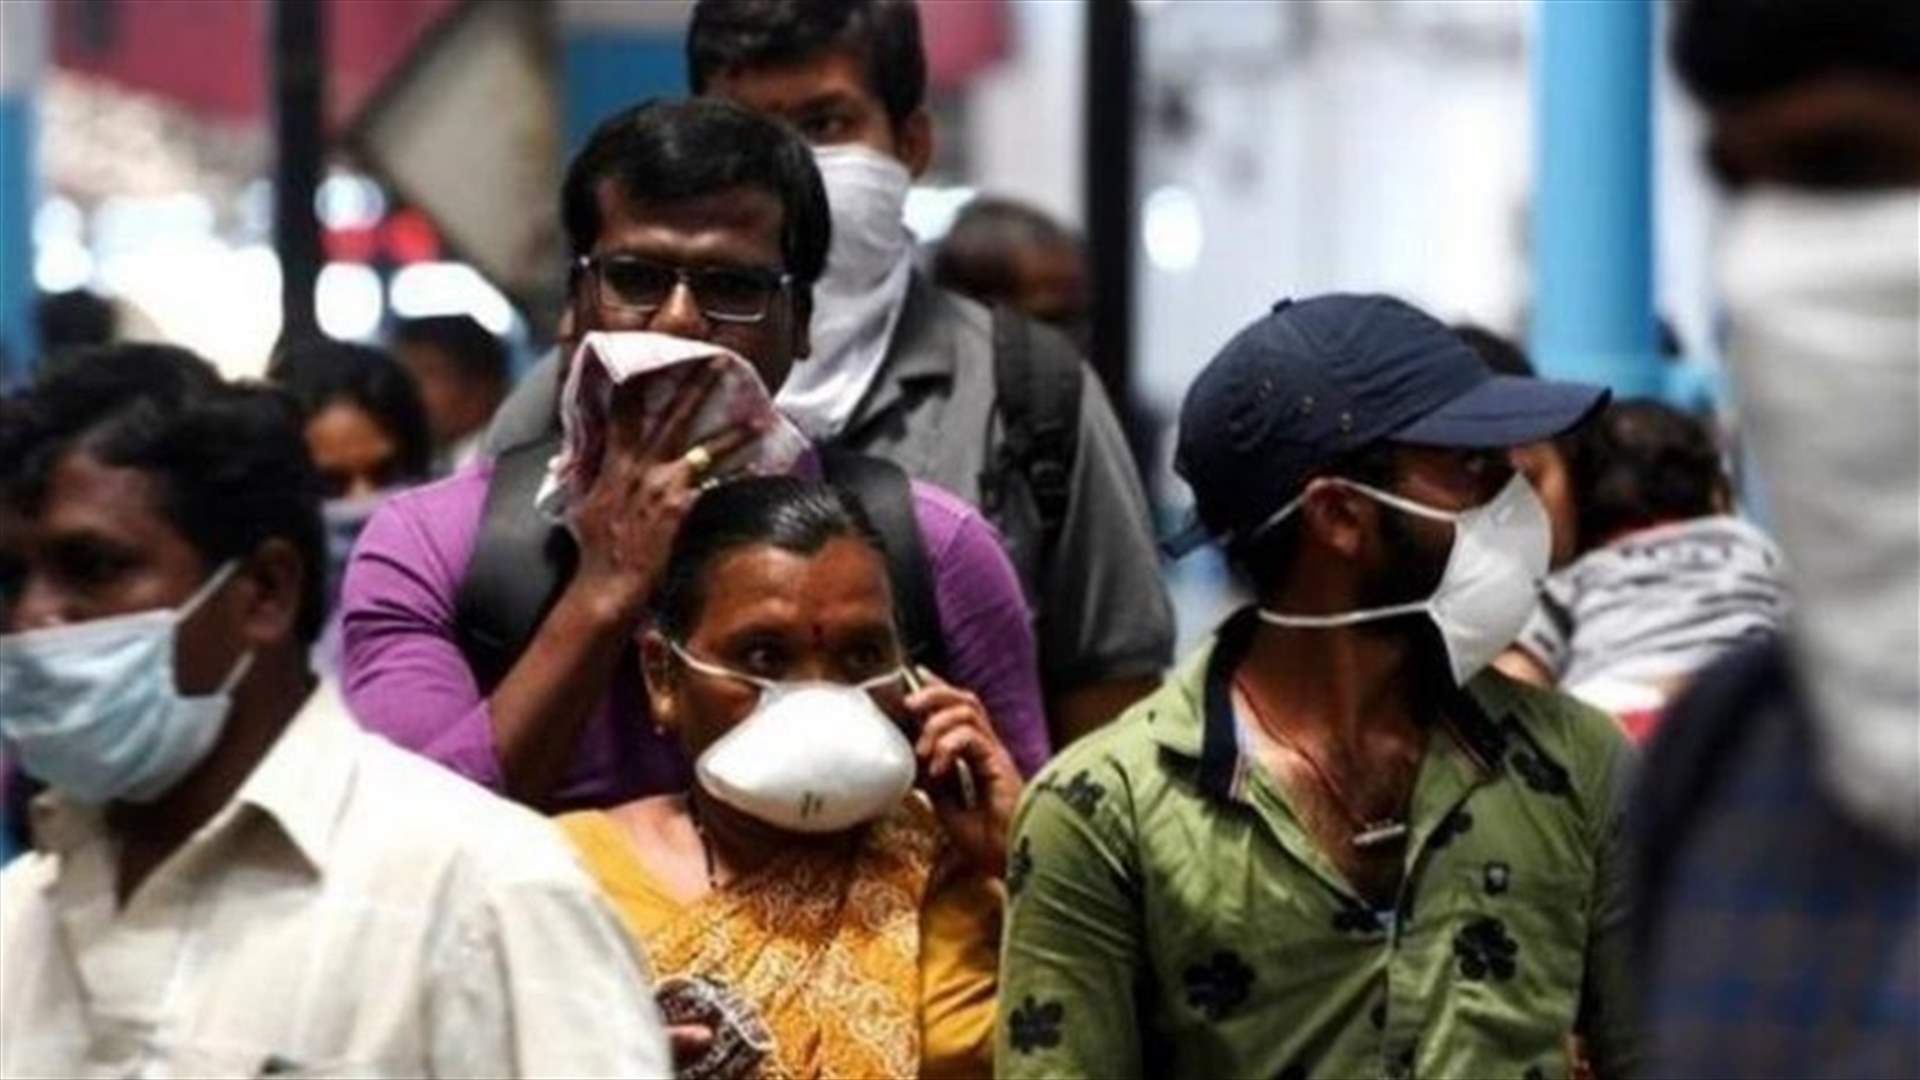 الهند تسجل 34403 إصابات جديدة بكوفيد-19 و320 وفاة